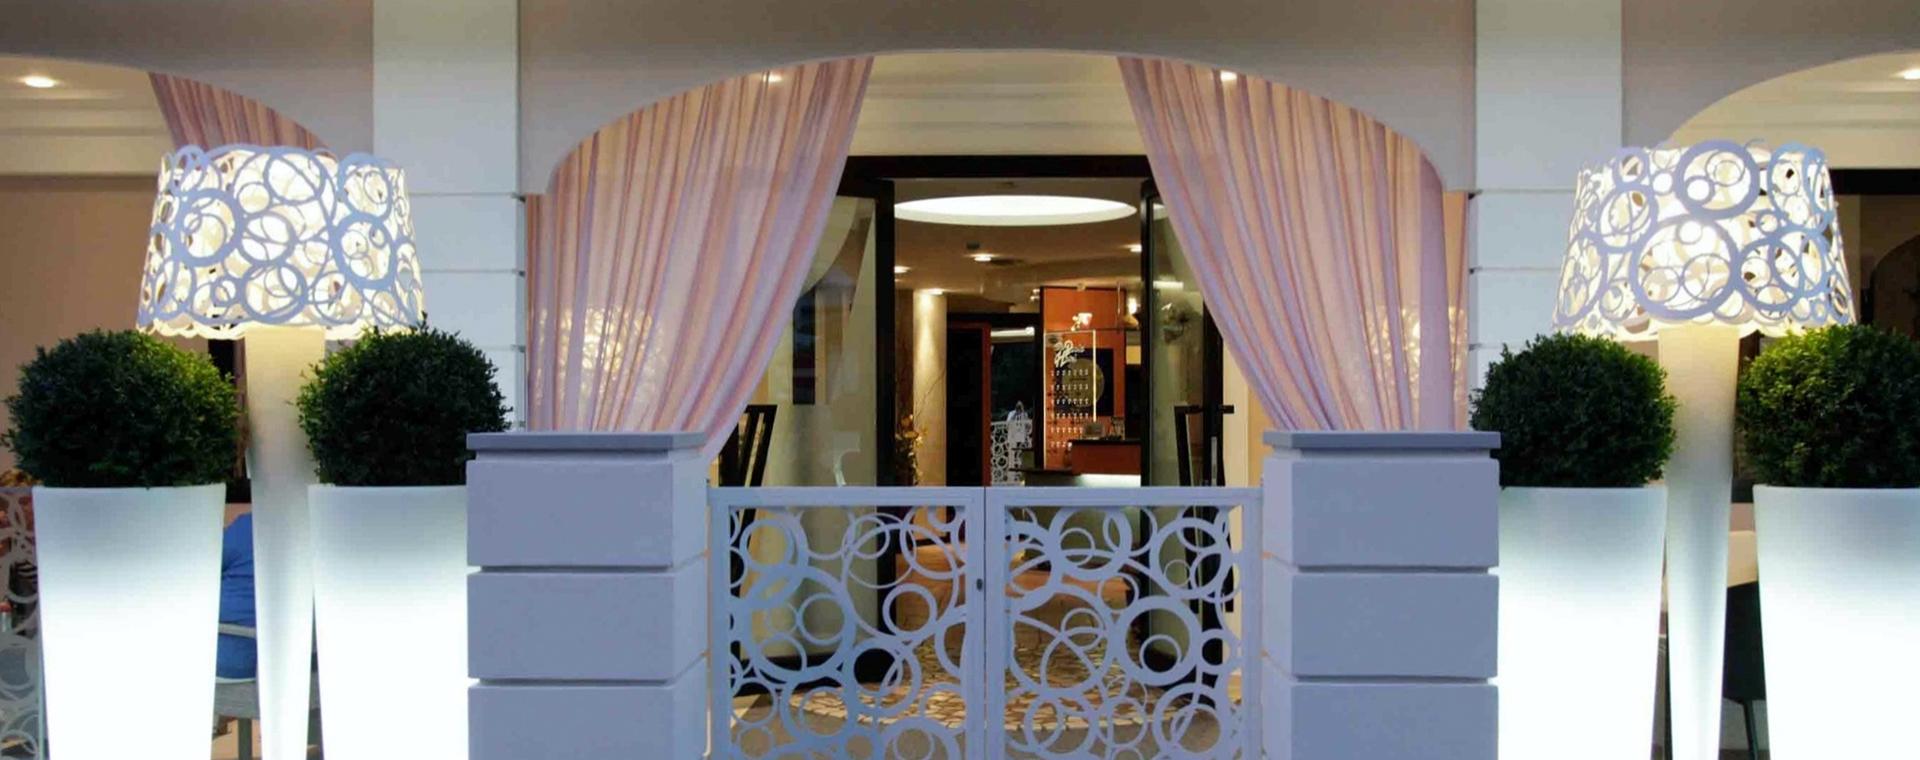 hotelvillapaola it 1-fr-306162-offre-de-septembre-dans-un-hotel-3-etoiles-avec-piscine-chauffee-et-idromassages-gratuits 004